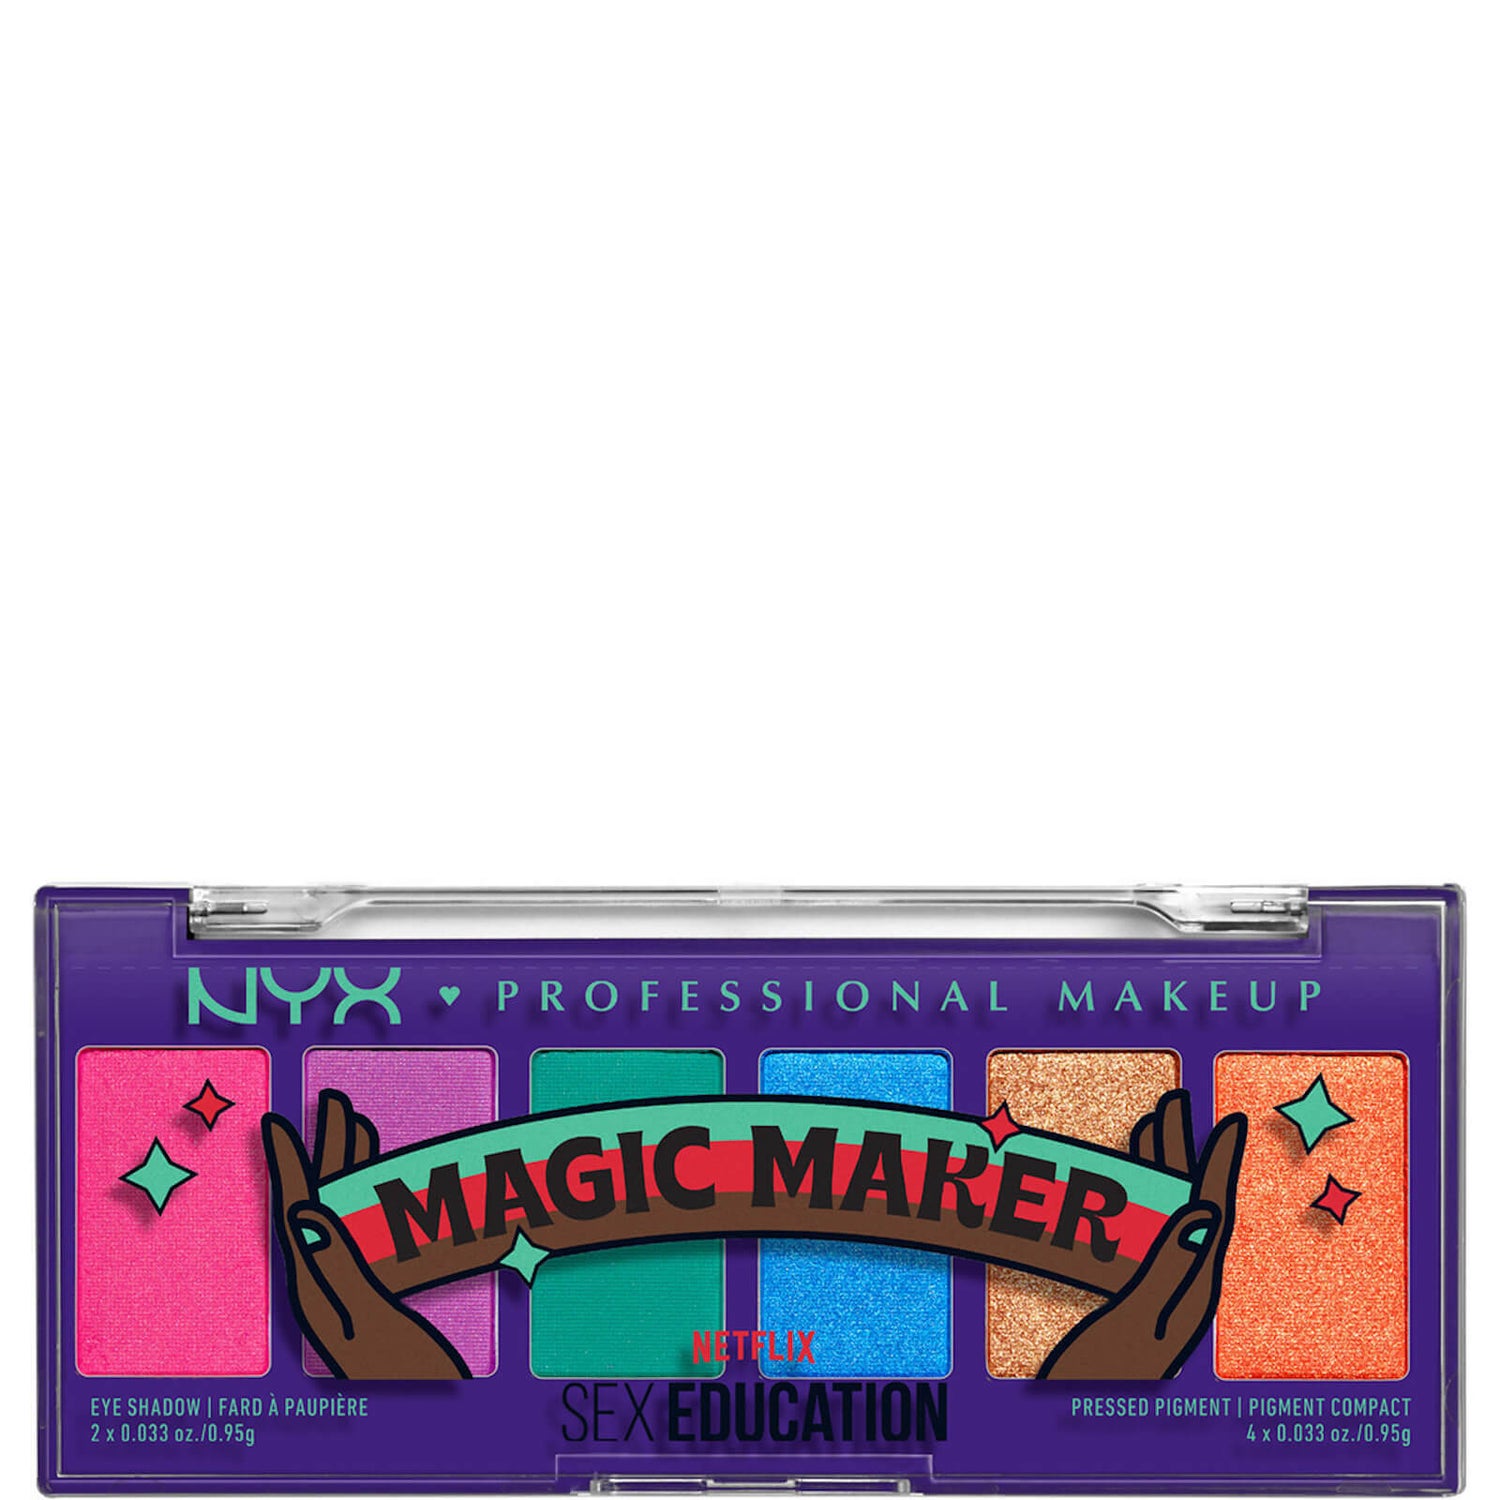 NYX Professional Makeup x Sex Education di Netflix: palette di ombretti in edizione limitata "Magic Maker